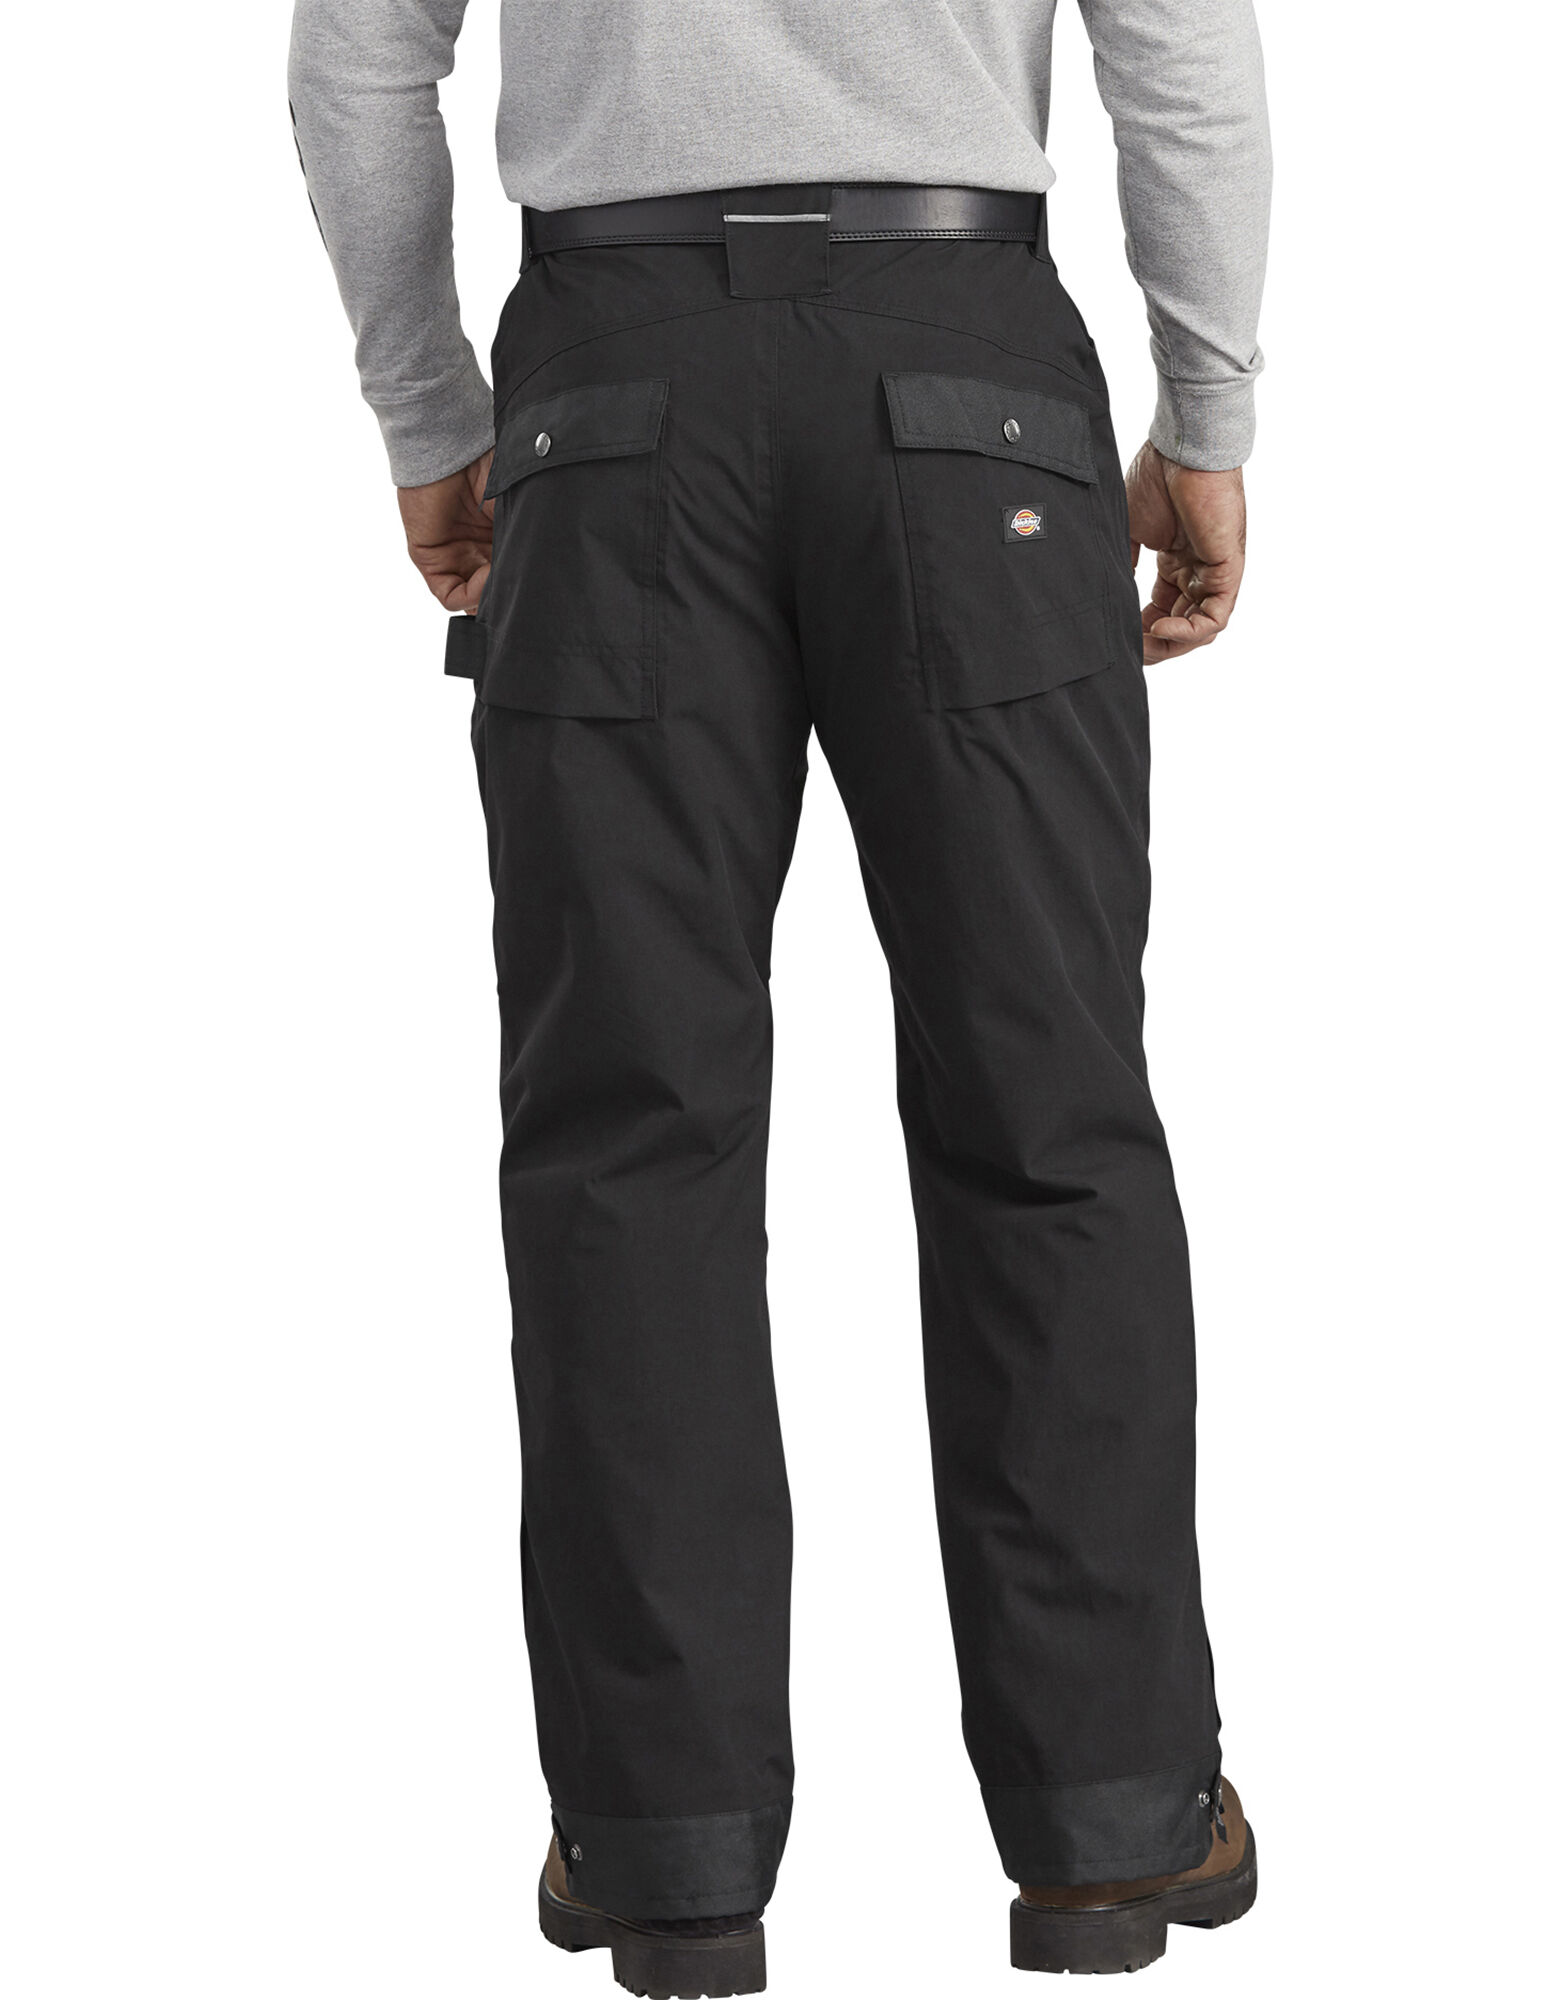 Various Sizes Men's Work Pants Dickies Raintite Waterproof Trousers 